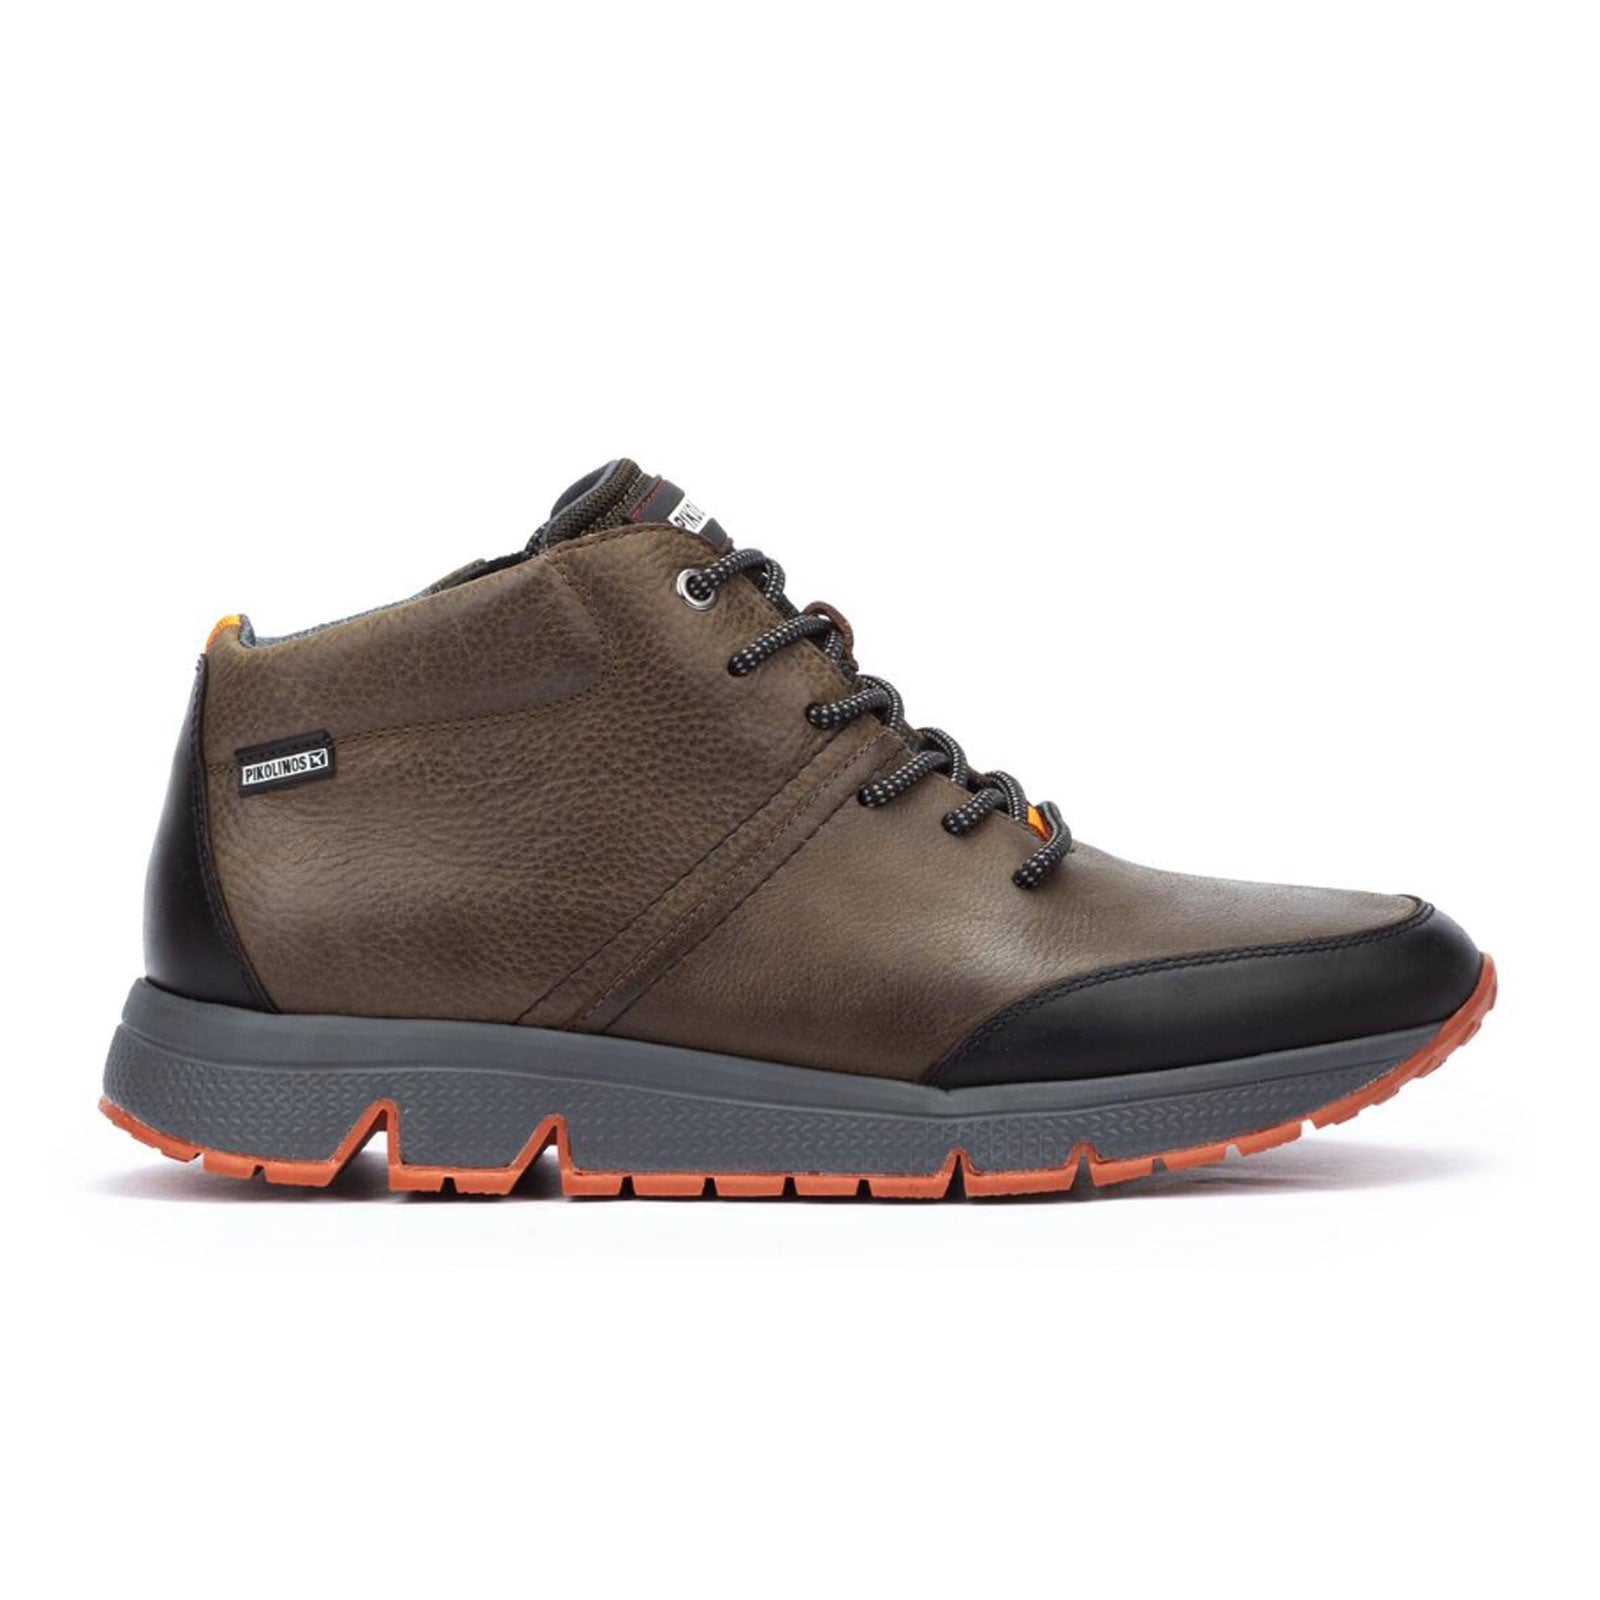 Pikolinos Ferrol M9U-8069NOC1 Sneaker (Men) - Kaki Dress-Casual - Lace Ups - The Heel Shoe Fitters